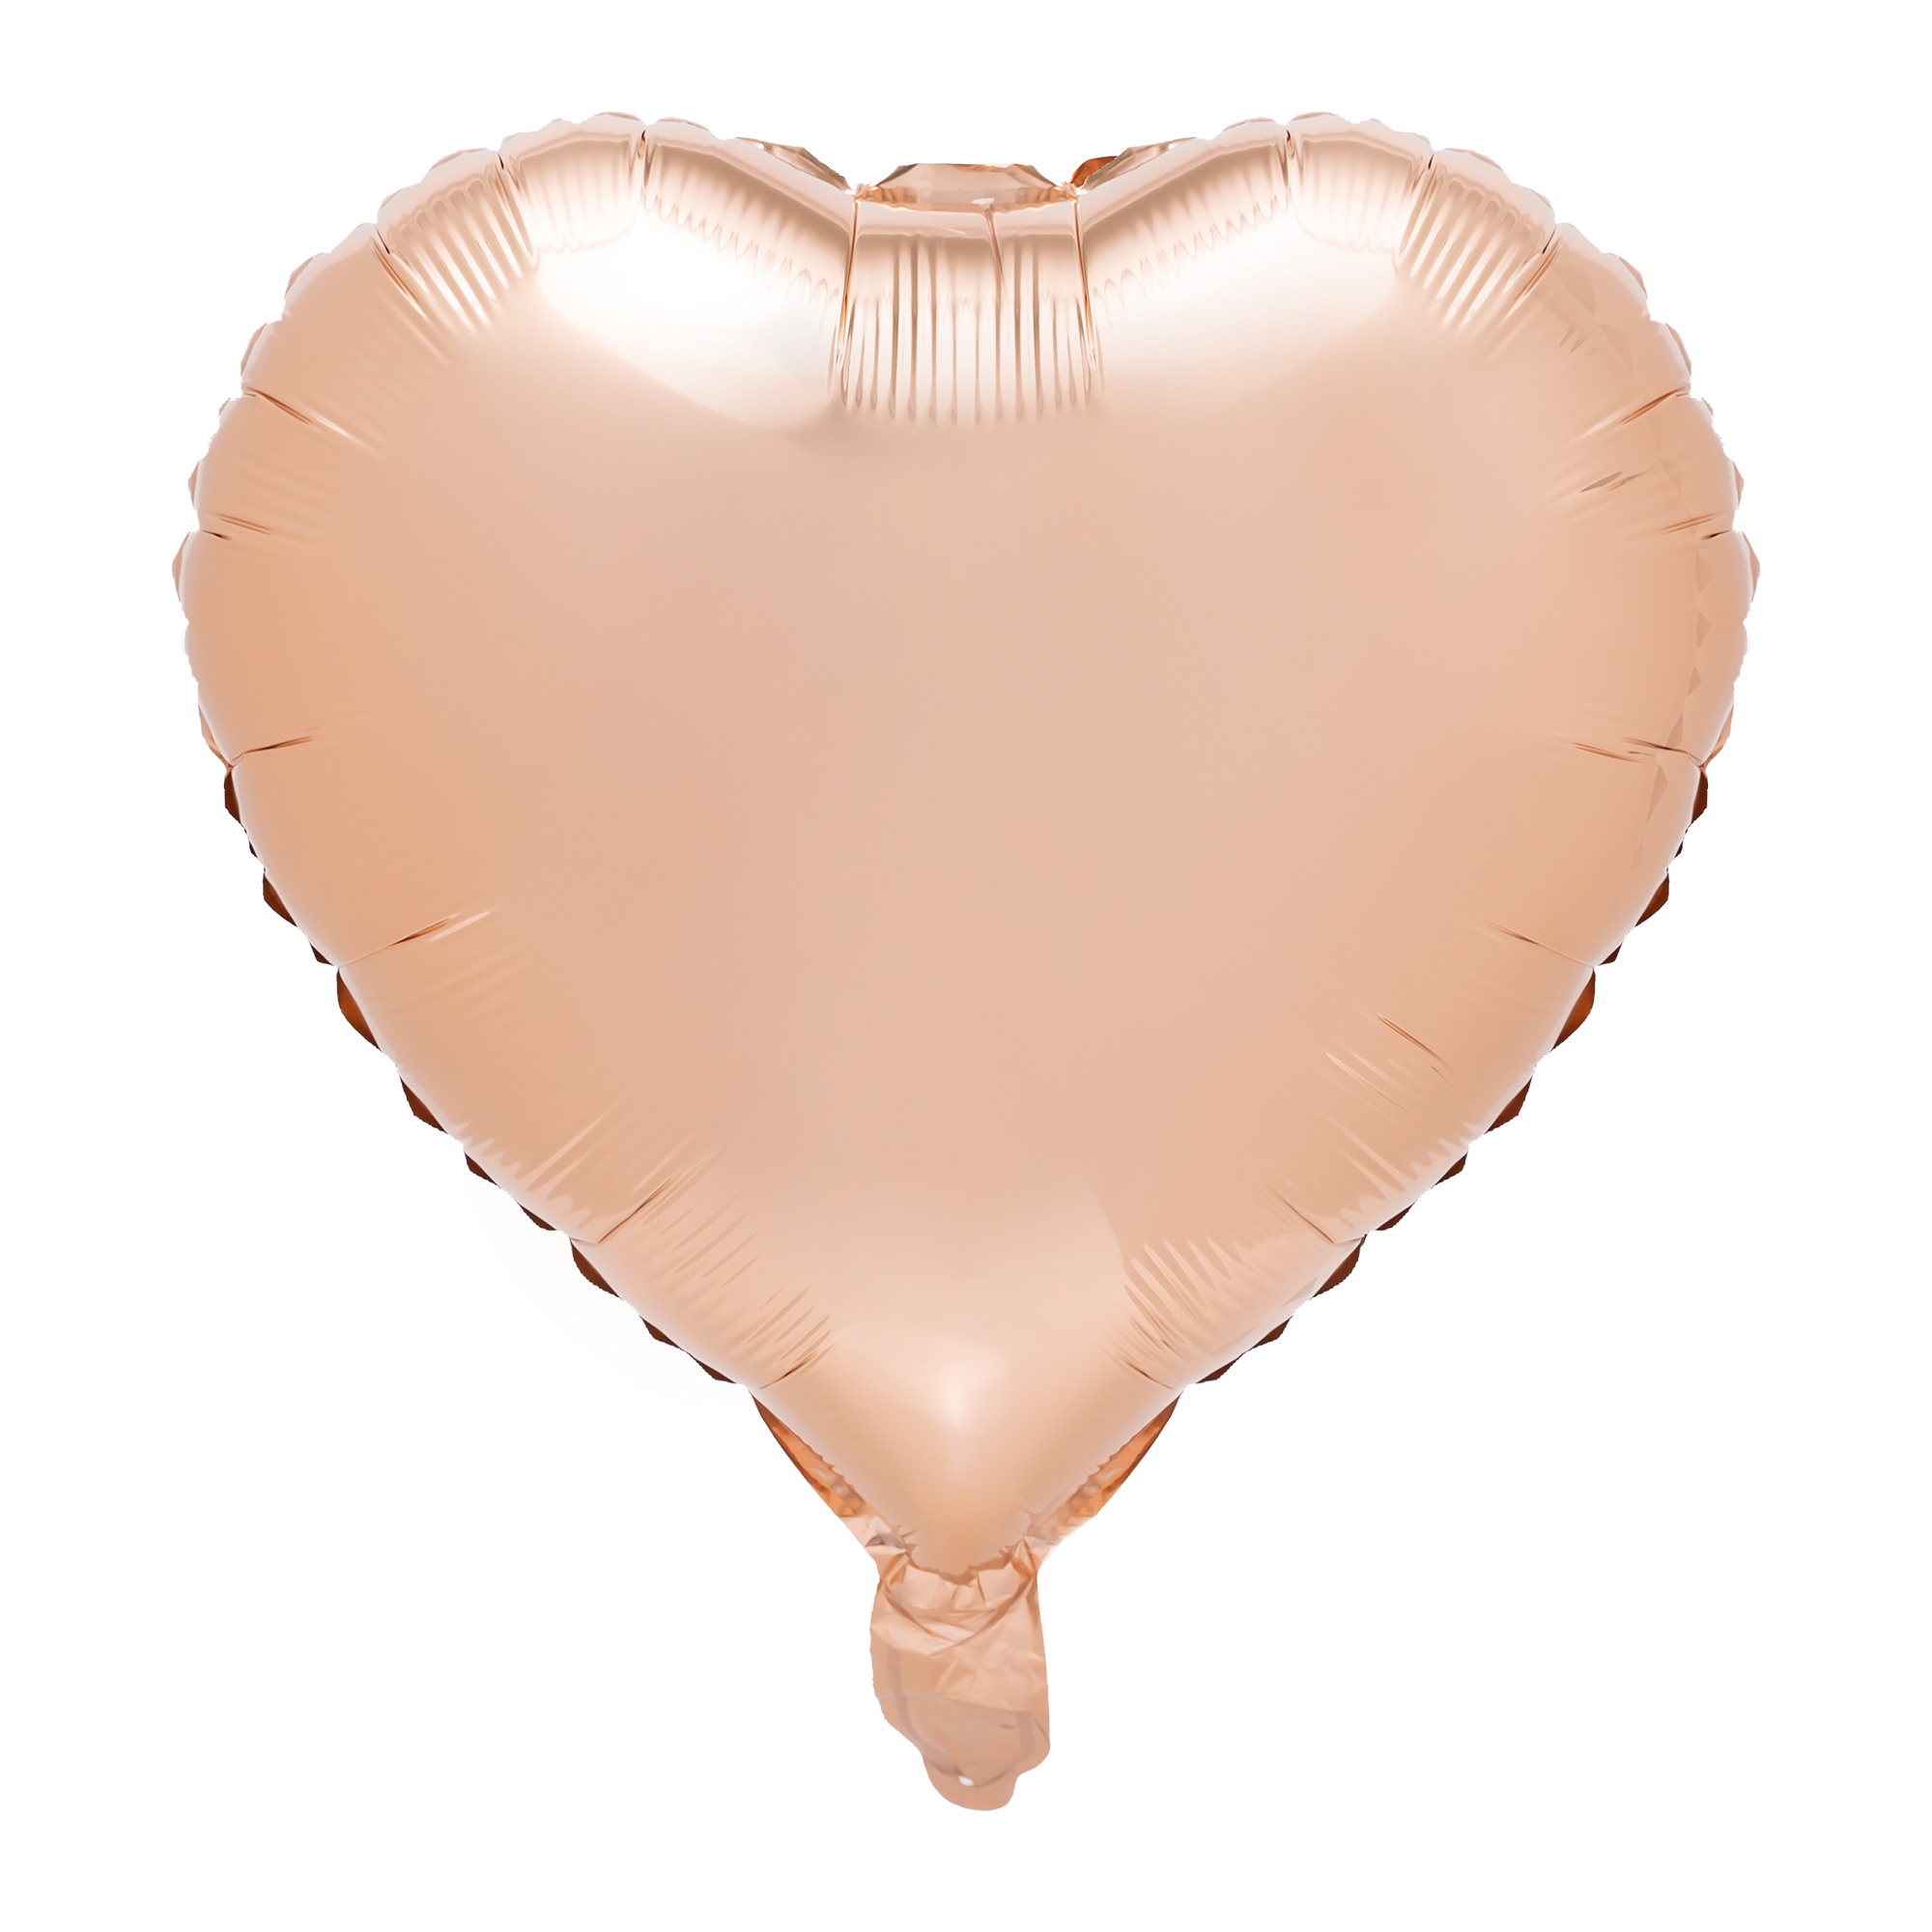 18" Heart Mylar Balloon 1pc/bag - Rose Gold